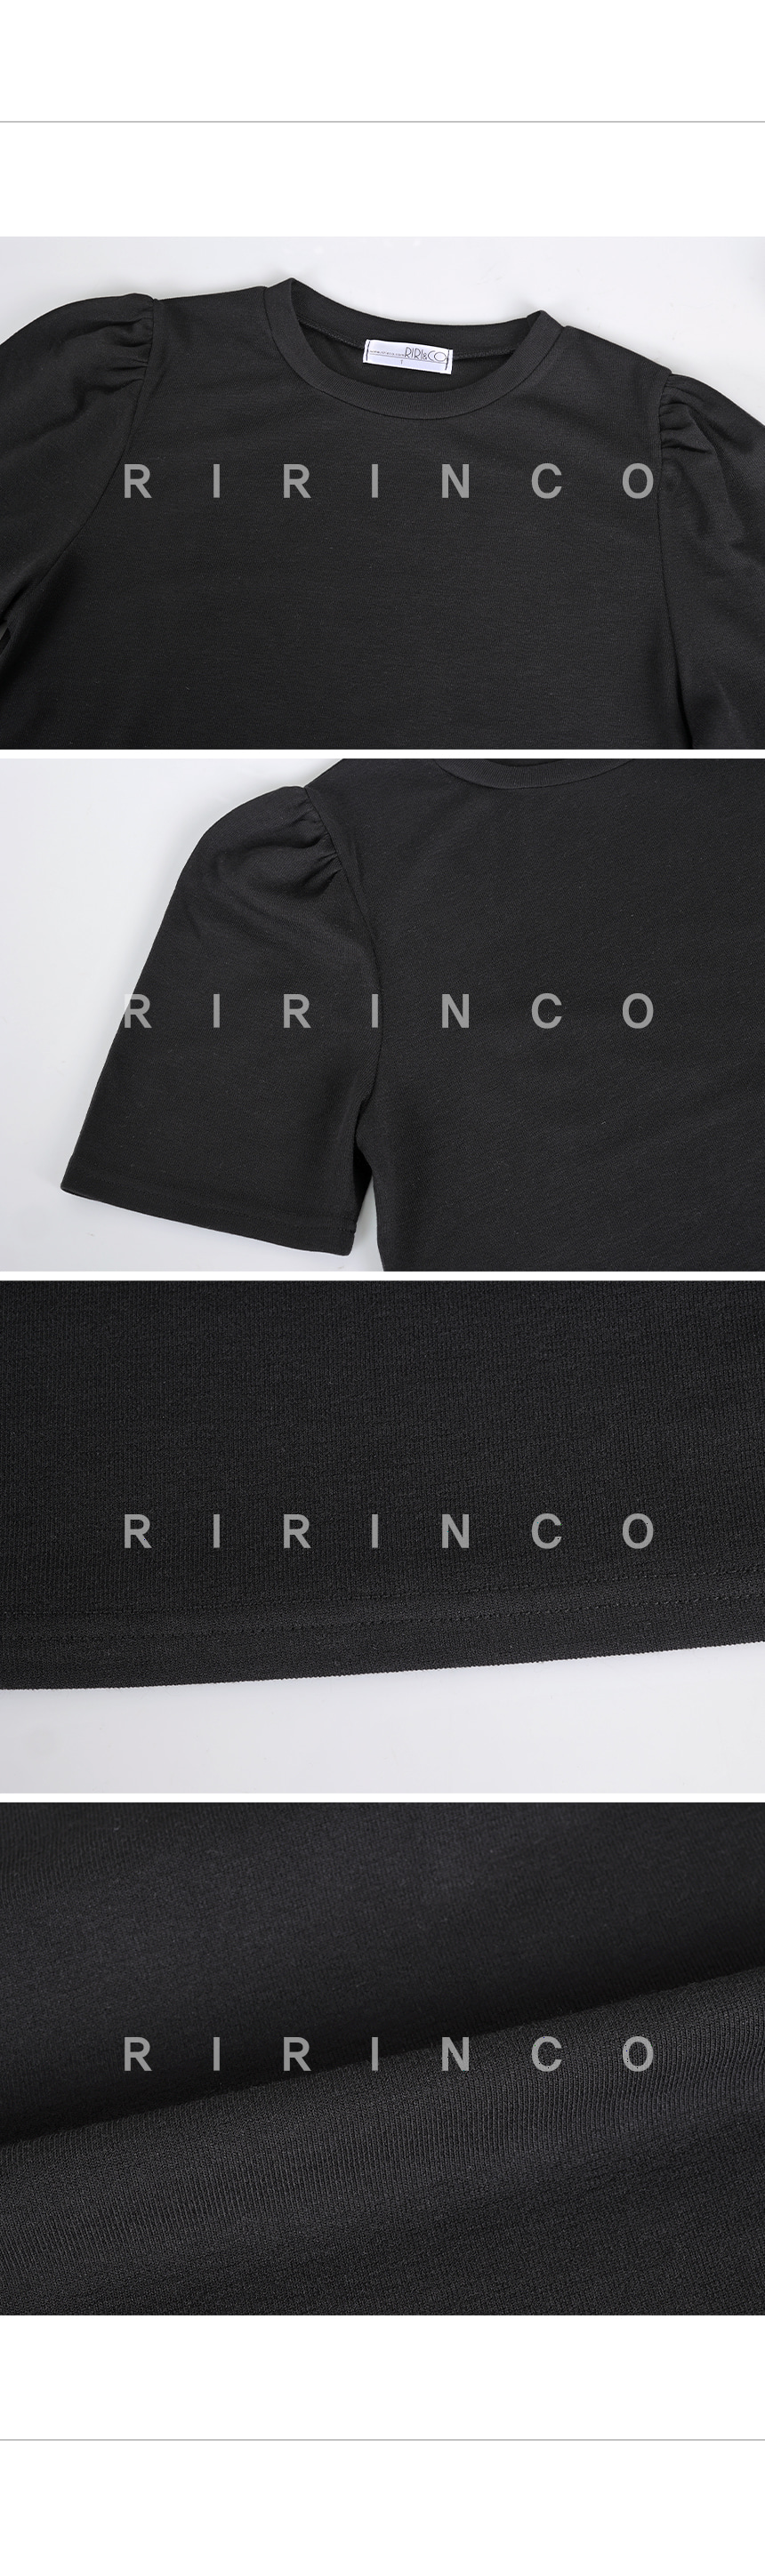 RIRINCO ラウンドネックパフシャリング半袖Tシャツ